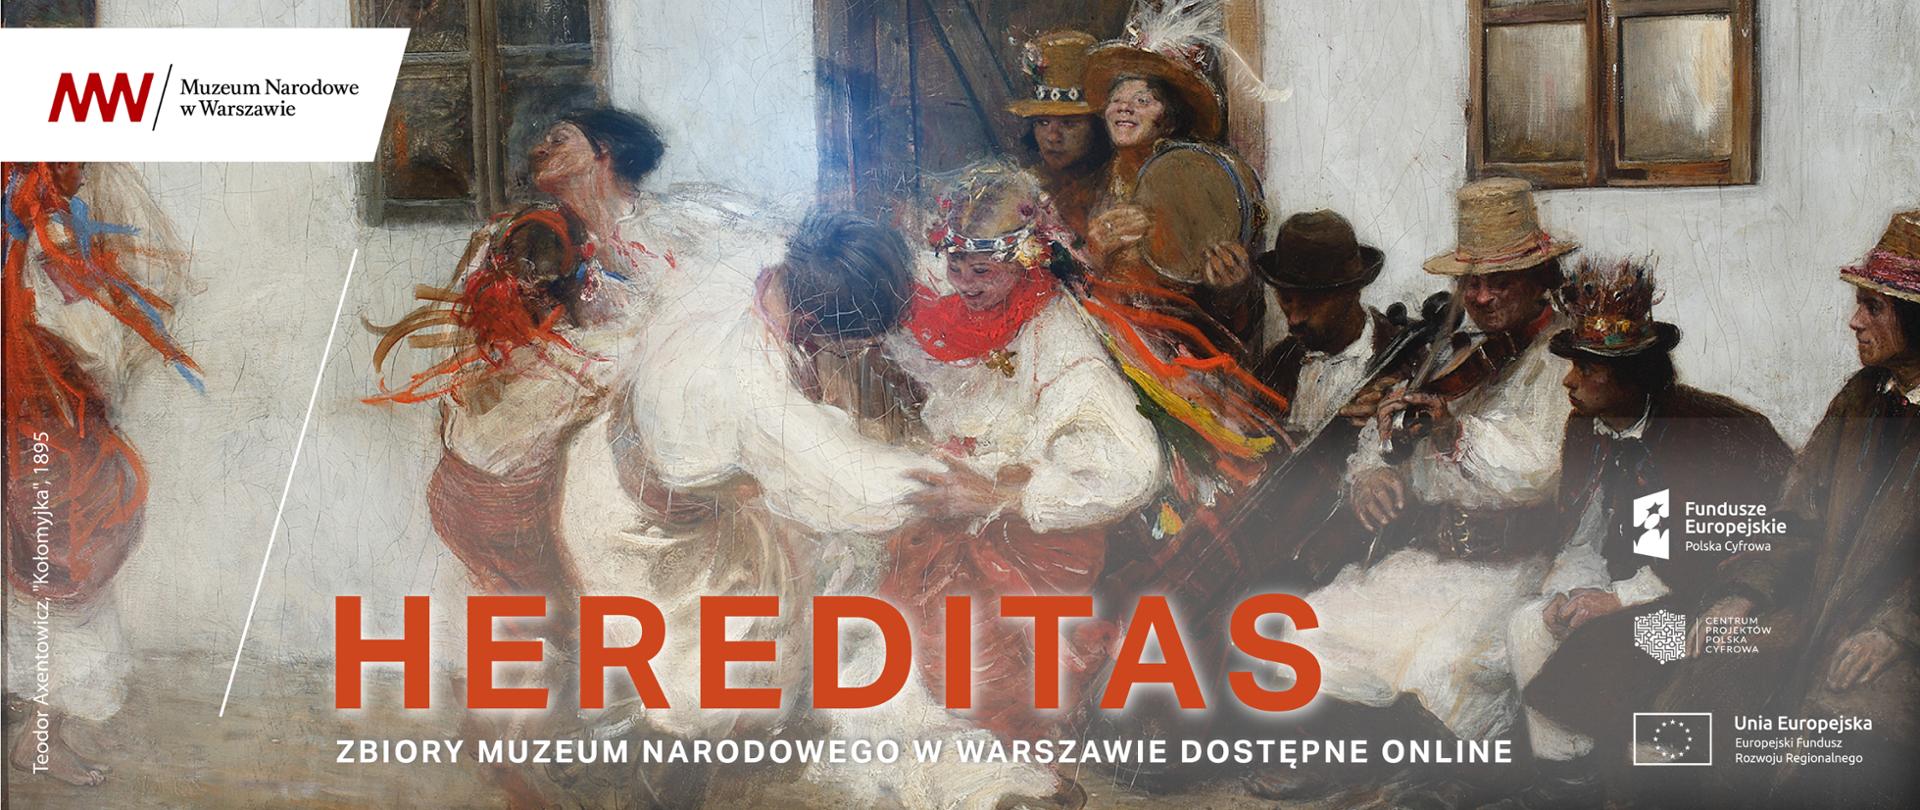 HEREDITAS. Digitalizacja i Udostępnianie Zbiorów Muzeum Narodowego w Warszawie